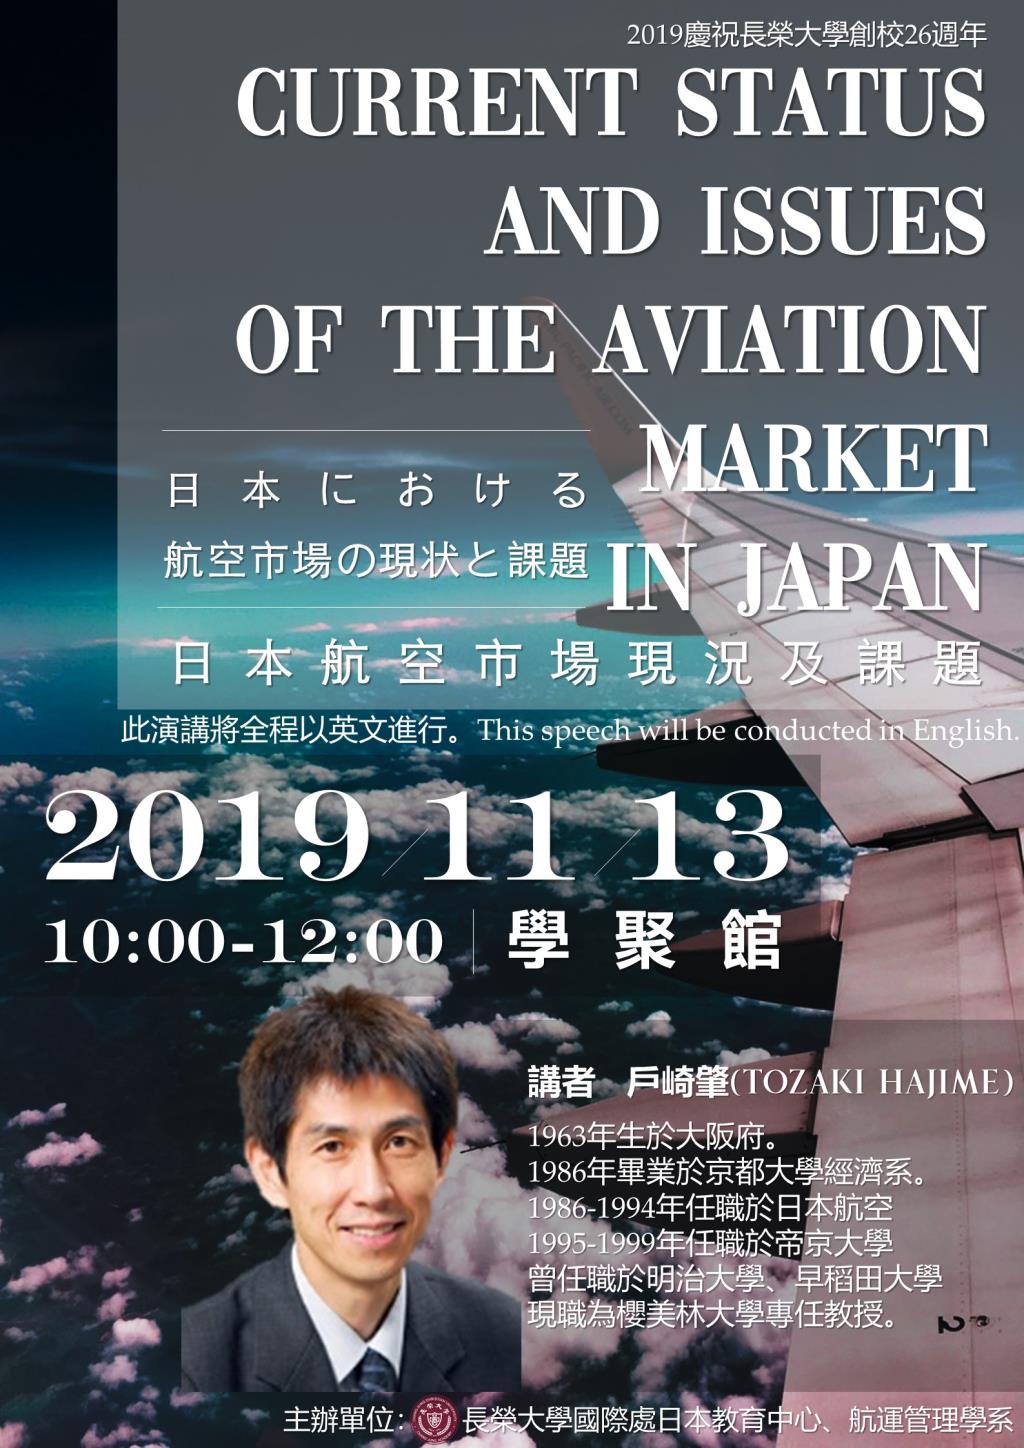 【日本航空市場現況及課題專題講座】--邀請航管系師生踴躍參與